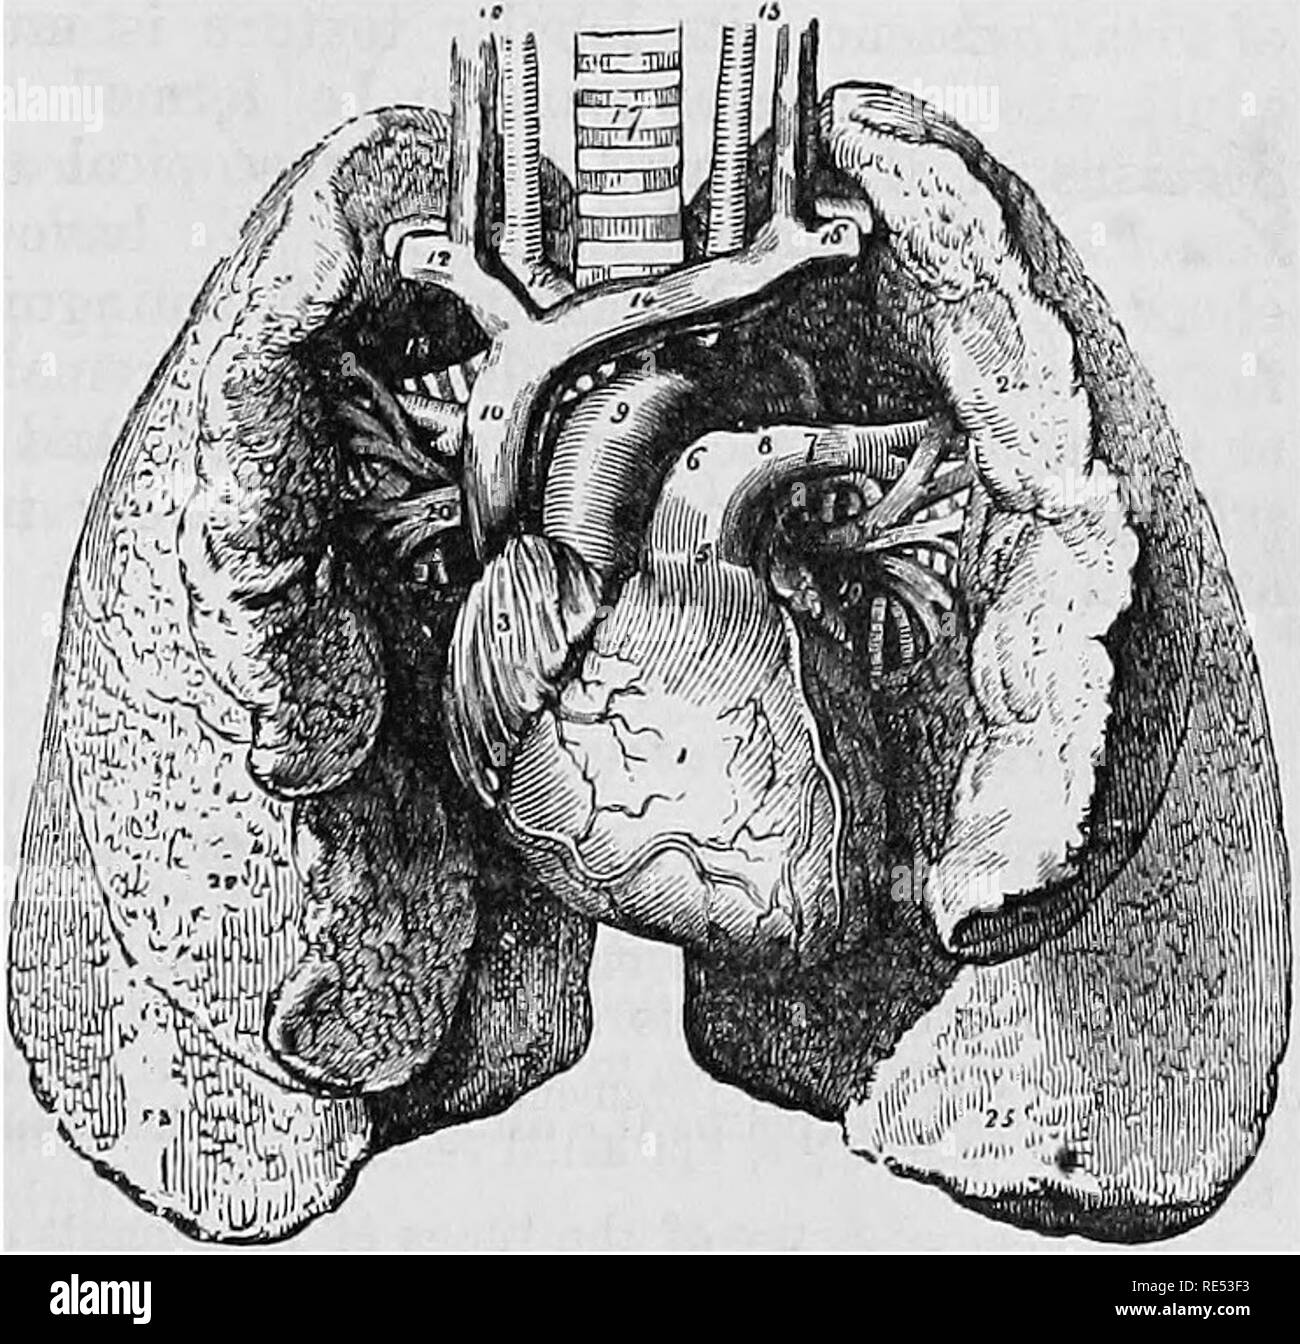 . La anatomia comparata degli animali domestici. Anatomia Veterinaria. Polmone OP LE PECORE 1, Kight polmone; 2, polmone sinistro; 4, cuore; 5, arterie carotidee vena cava. Fig. 242. Vista INFEEIOR. 3, Trachea; 6, posteriore 1, Otto ventricolo; 2, ventricolo sinistro; 3, destra oreillette; 4, padiglione auricolare sinistro; 5, arteria polmonare; 6, Otto arteria polmonare; 7, sinistra pul- monary arteria; 8, legamento del dotto arterioso; 9, Arco di aorta; 10, per la vena cava superiore; ll,Arteriainnorainata; 12, destra vena succlavia, con l'arteria dietro di esso; 13, Otto comune arteria carotide e la vena; 14, a sinistra della vena innominata; 15, sinistra caro- t Foto Stock